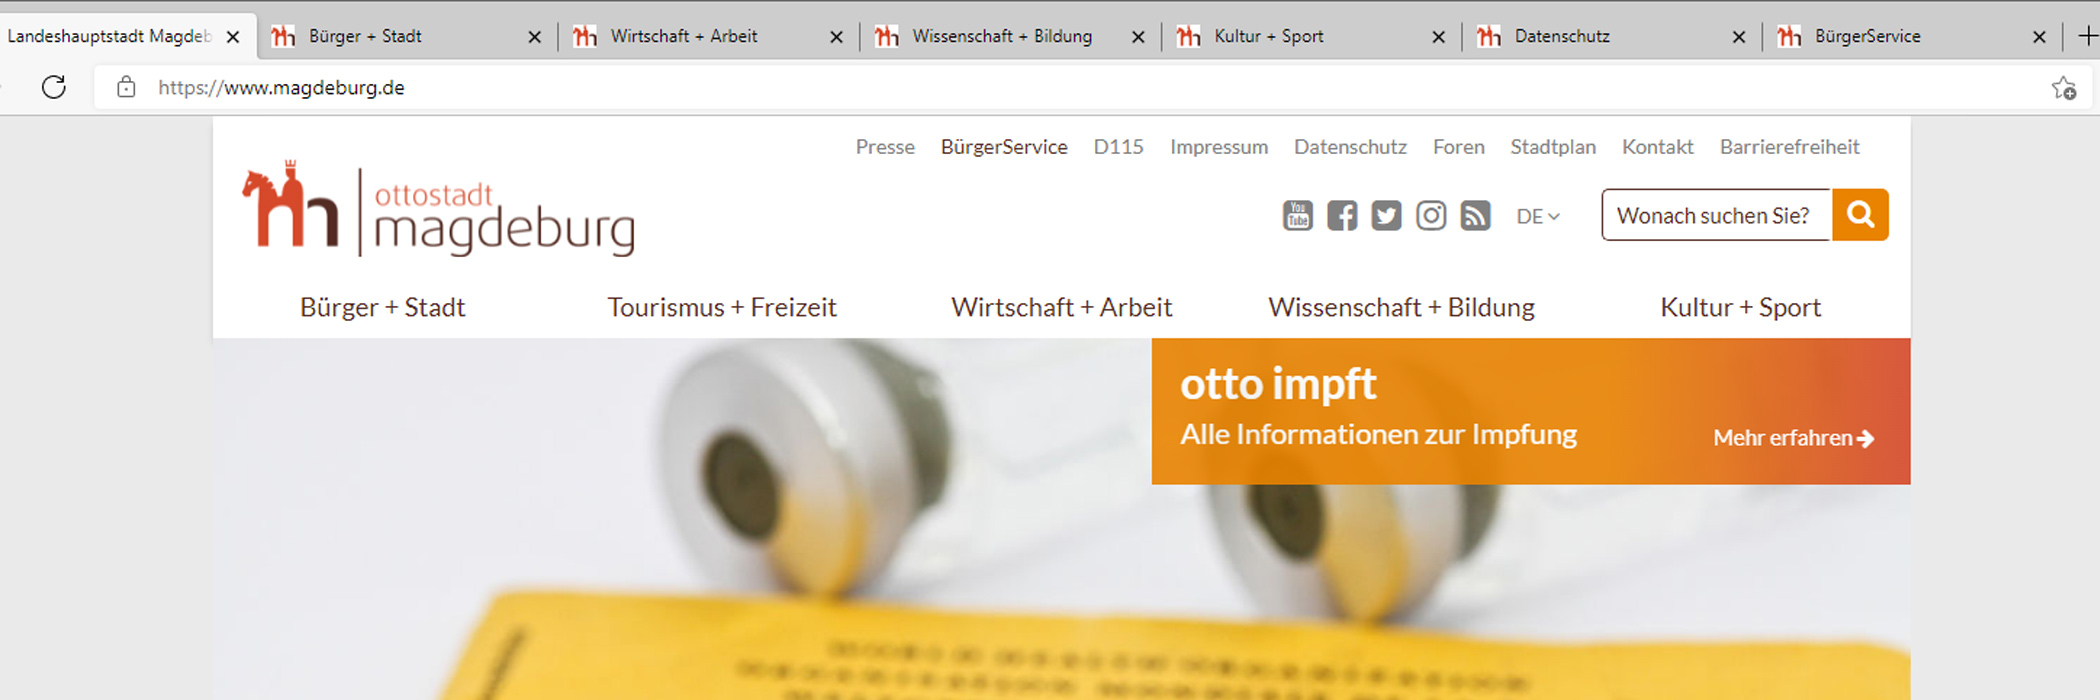 Browser zeigt 7 geöffnete Webseiten in Tabs beziehungsweise Reitern. Der aktive Tab zeigt die Webseite www.magdeburg.de